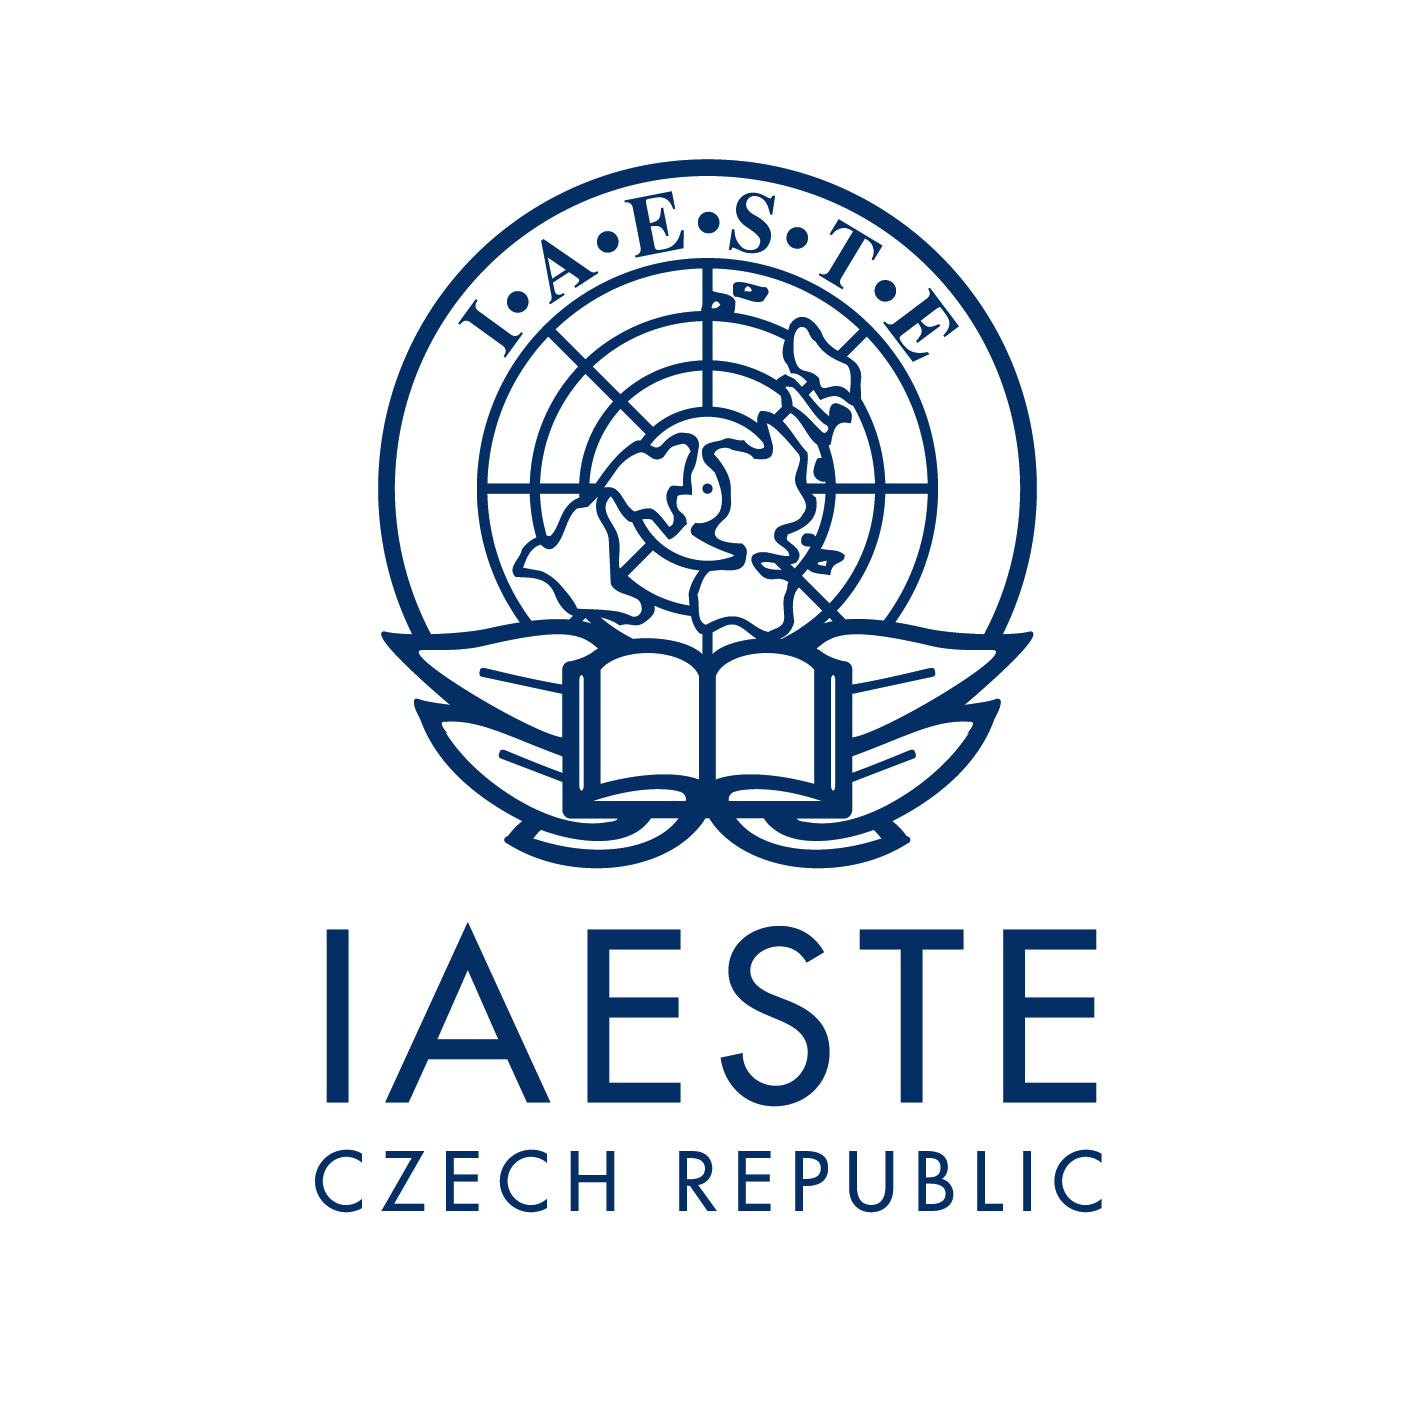 IAESTE Czech Republic